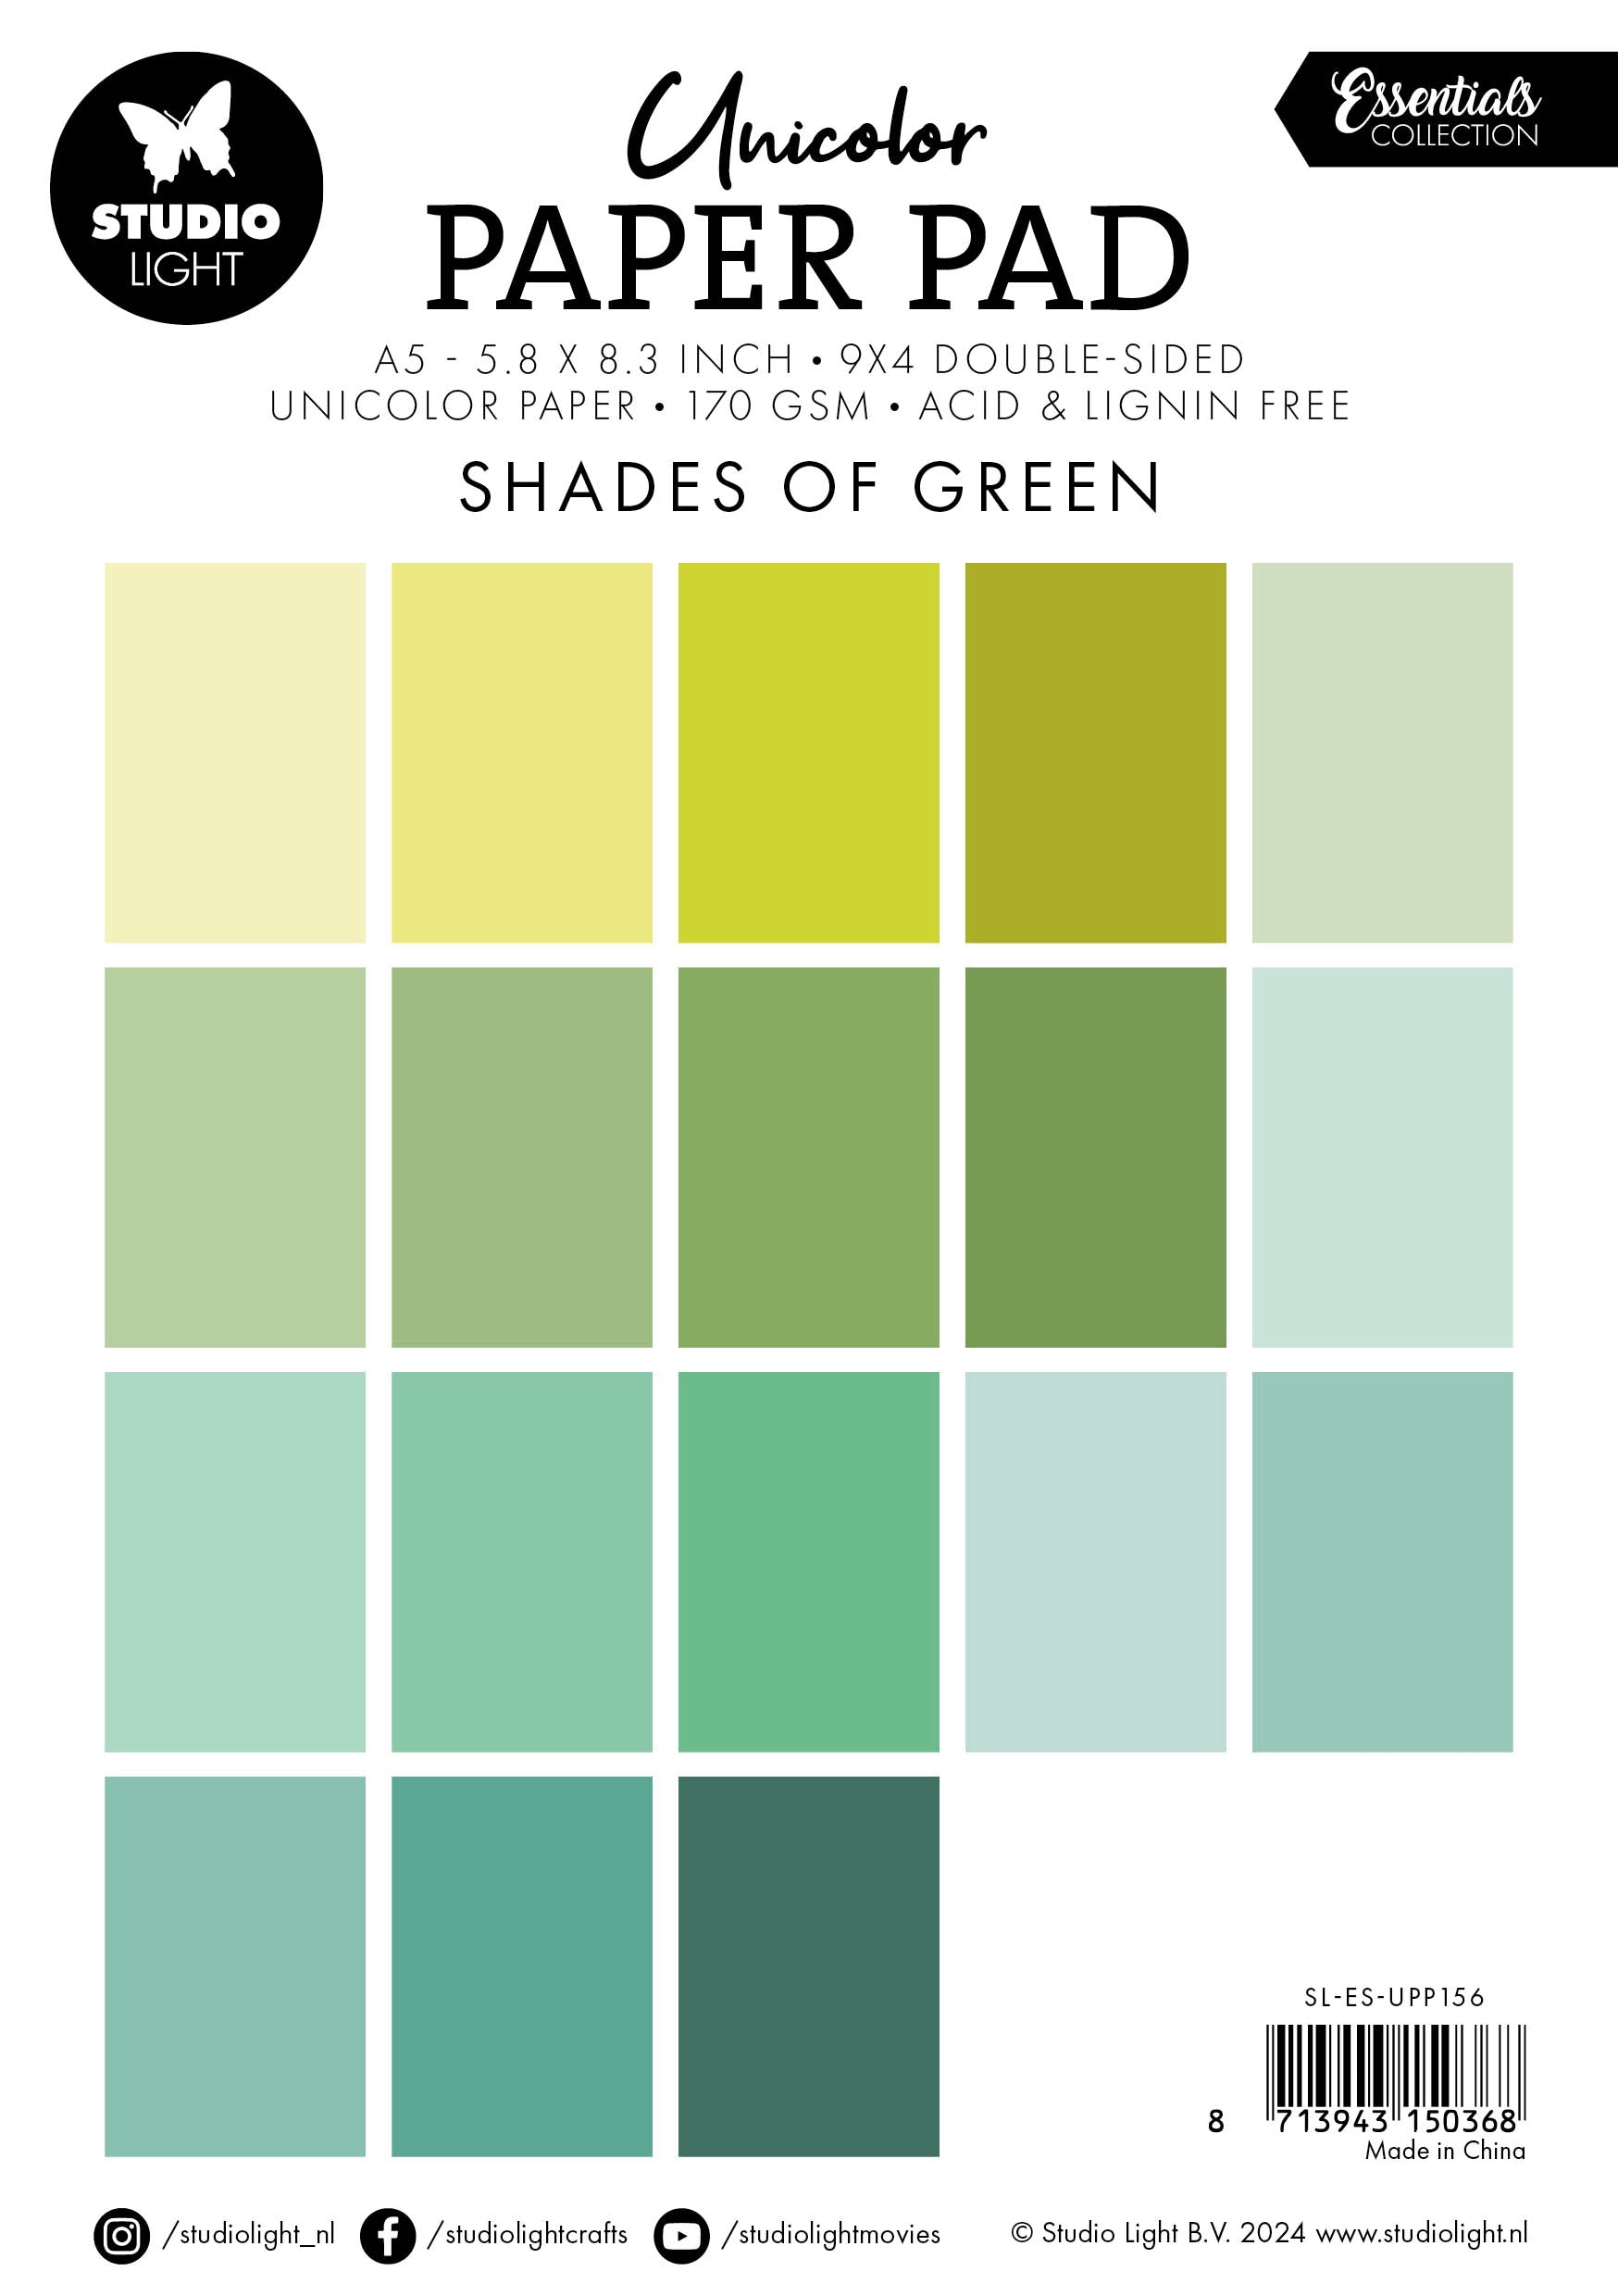 SL Unicolor Paper Pad Shades Of Green Essentials 36 SH